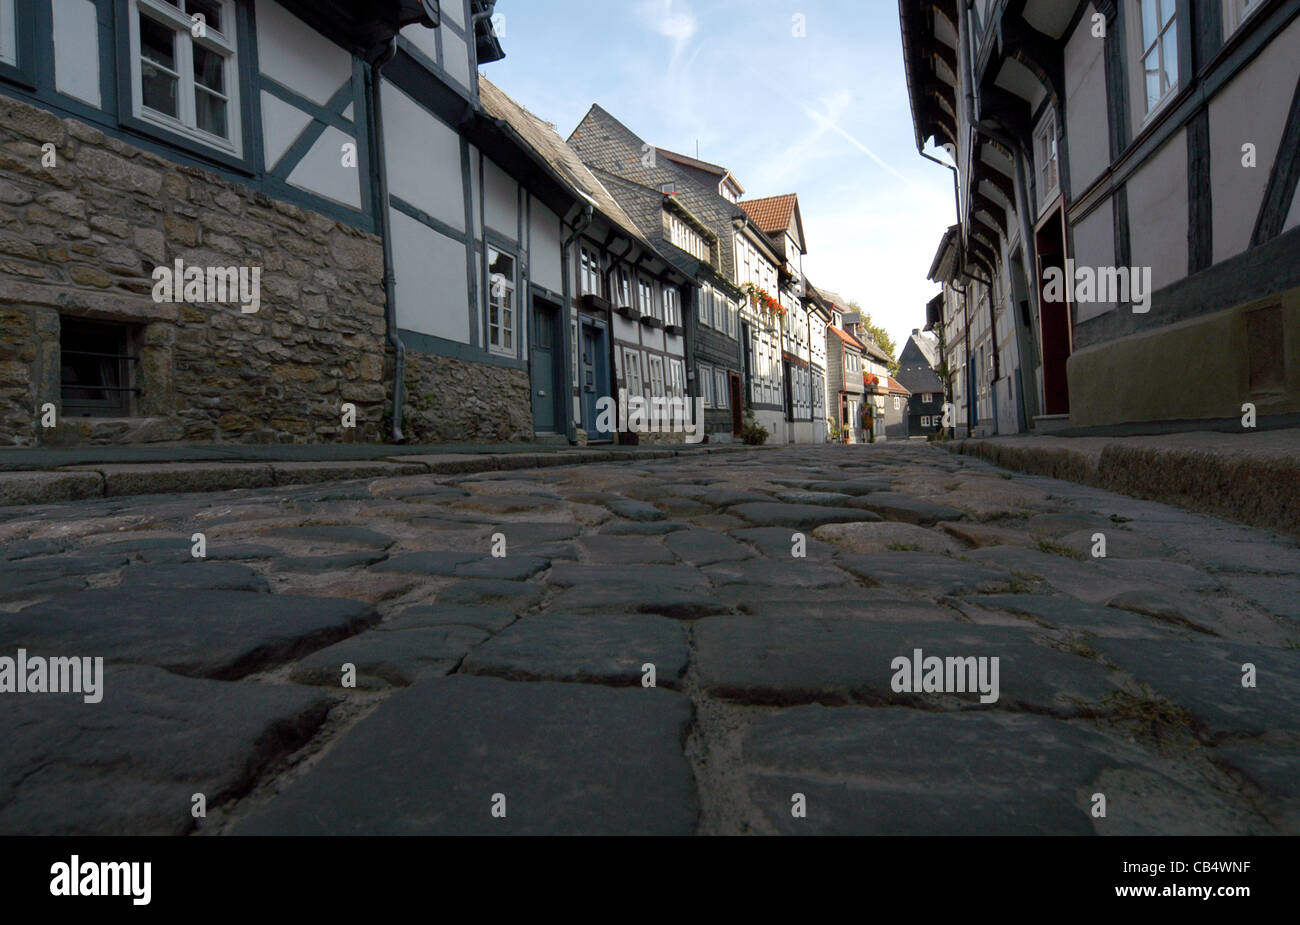 Strade acciottolate e metà case con travi di legno della città medievale di Goslar, Repubblica federale di Germania. Goslar è un sito Patrimonio Mondiale dell'UNESCO. Foto Stock